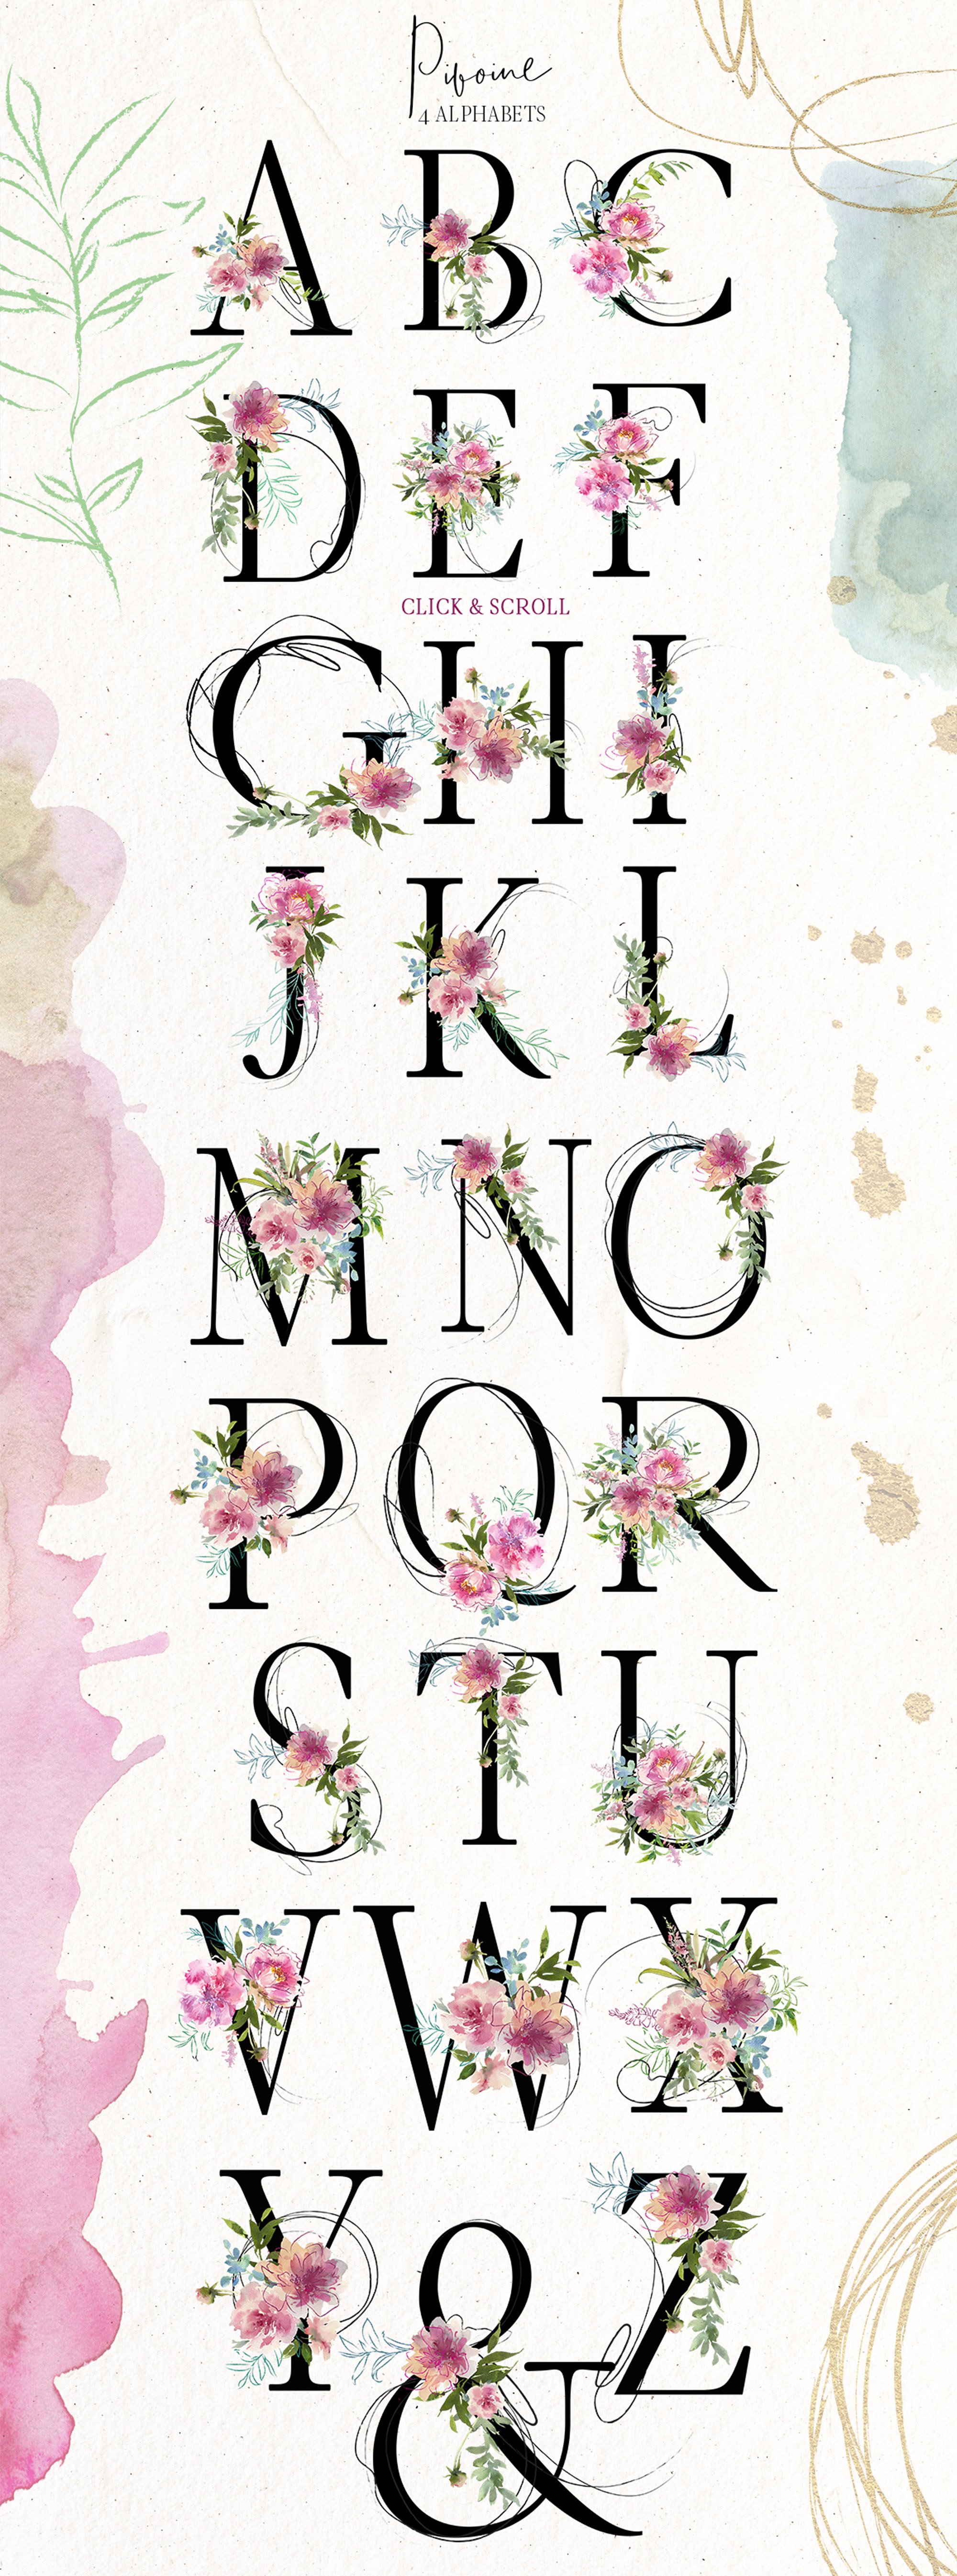 手绘水彩花卉字母数字设计素材 Pivoine-Waterco